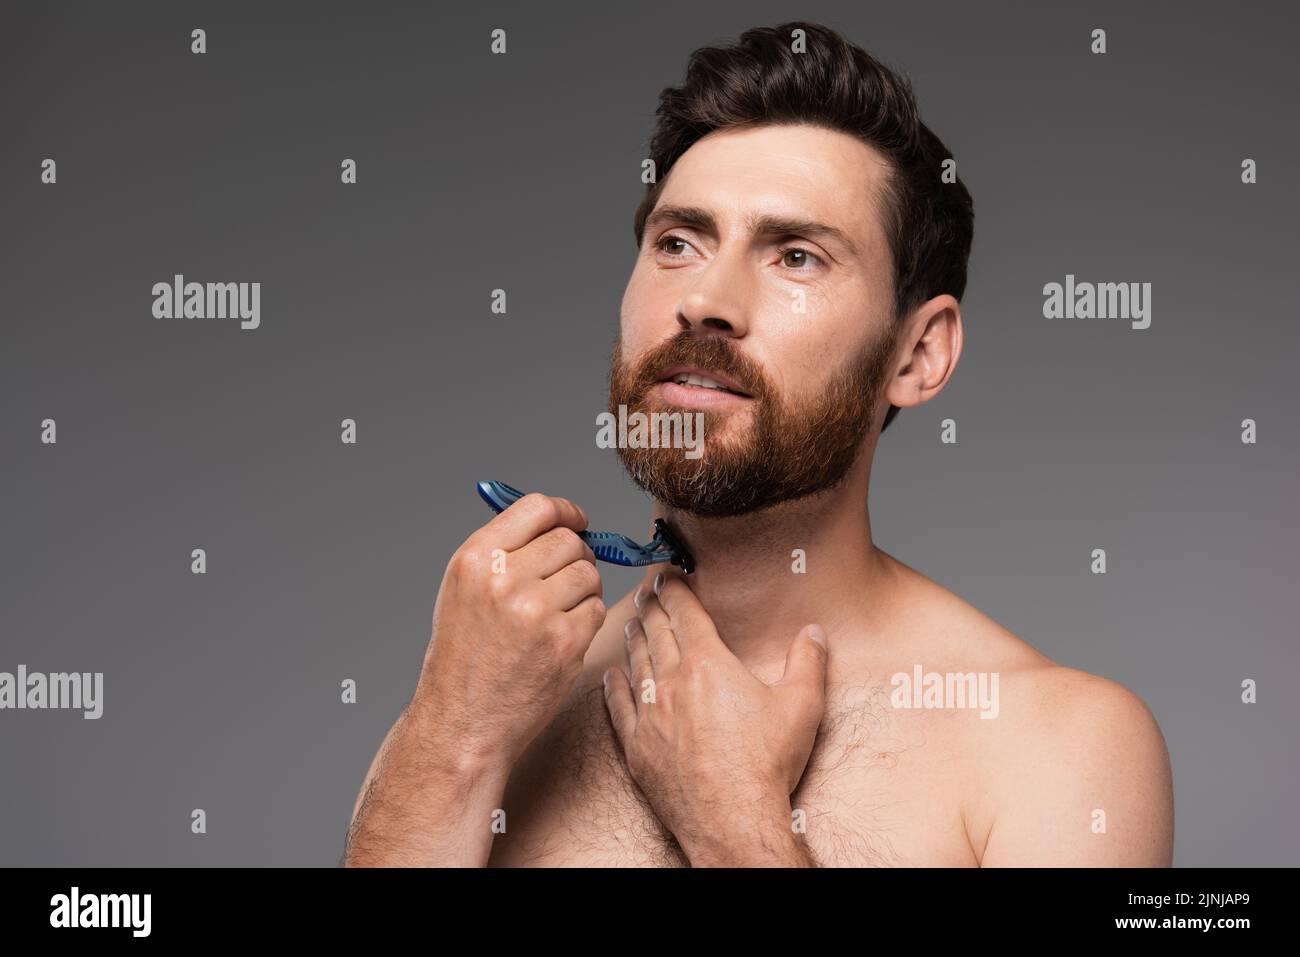 barba hombre sin camisa con cuchilla de seguridad aislada sobre imagen de archivo gris Foto de stock